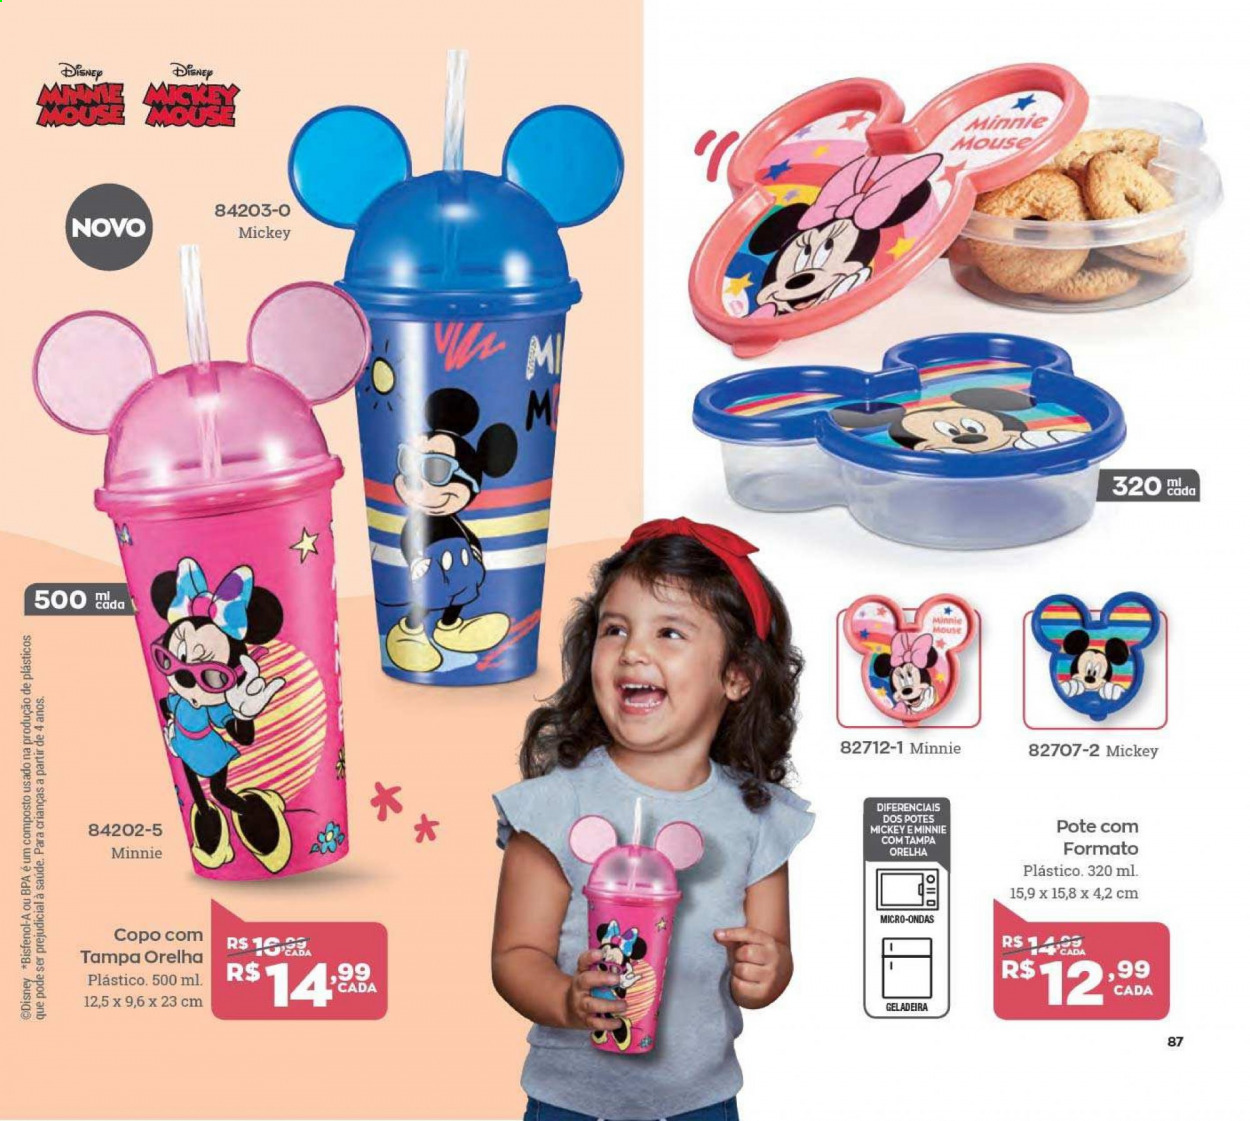 thumbnail - Folheto Avon - Produtos em promoção - Disney, Minnie, copo. Página 87.